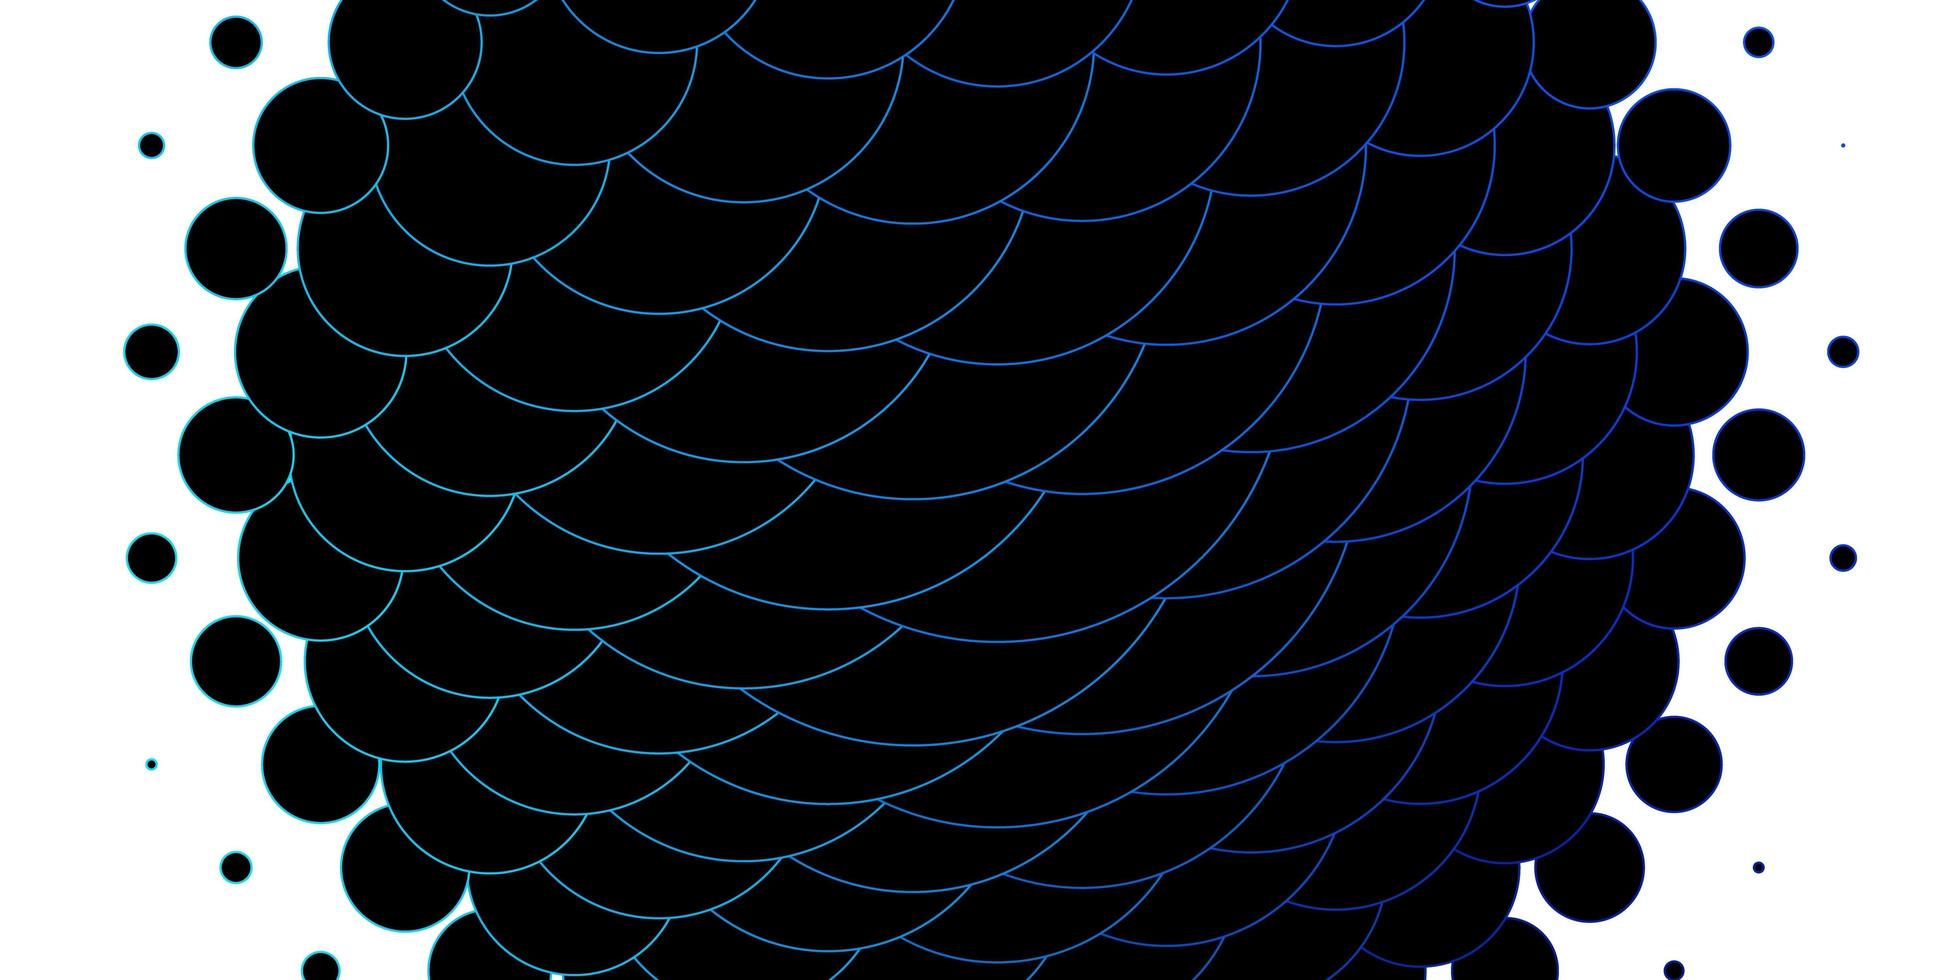 sfondo vettoriale azzurro con punti disegno decorativo astratto in stile sfumato con motivo a bolle per siti web